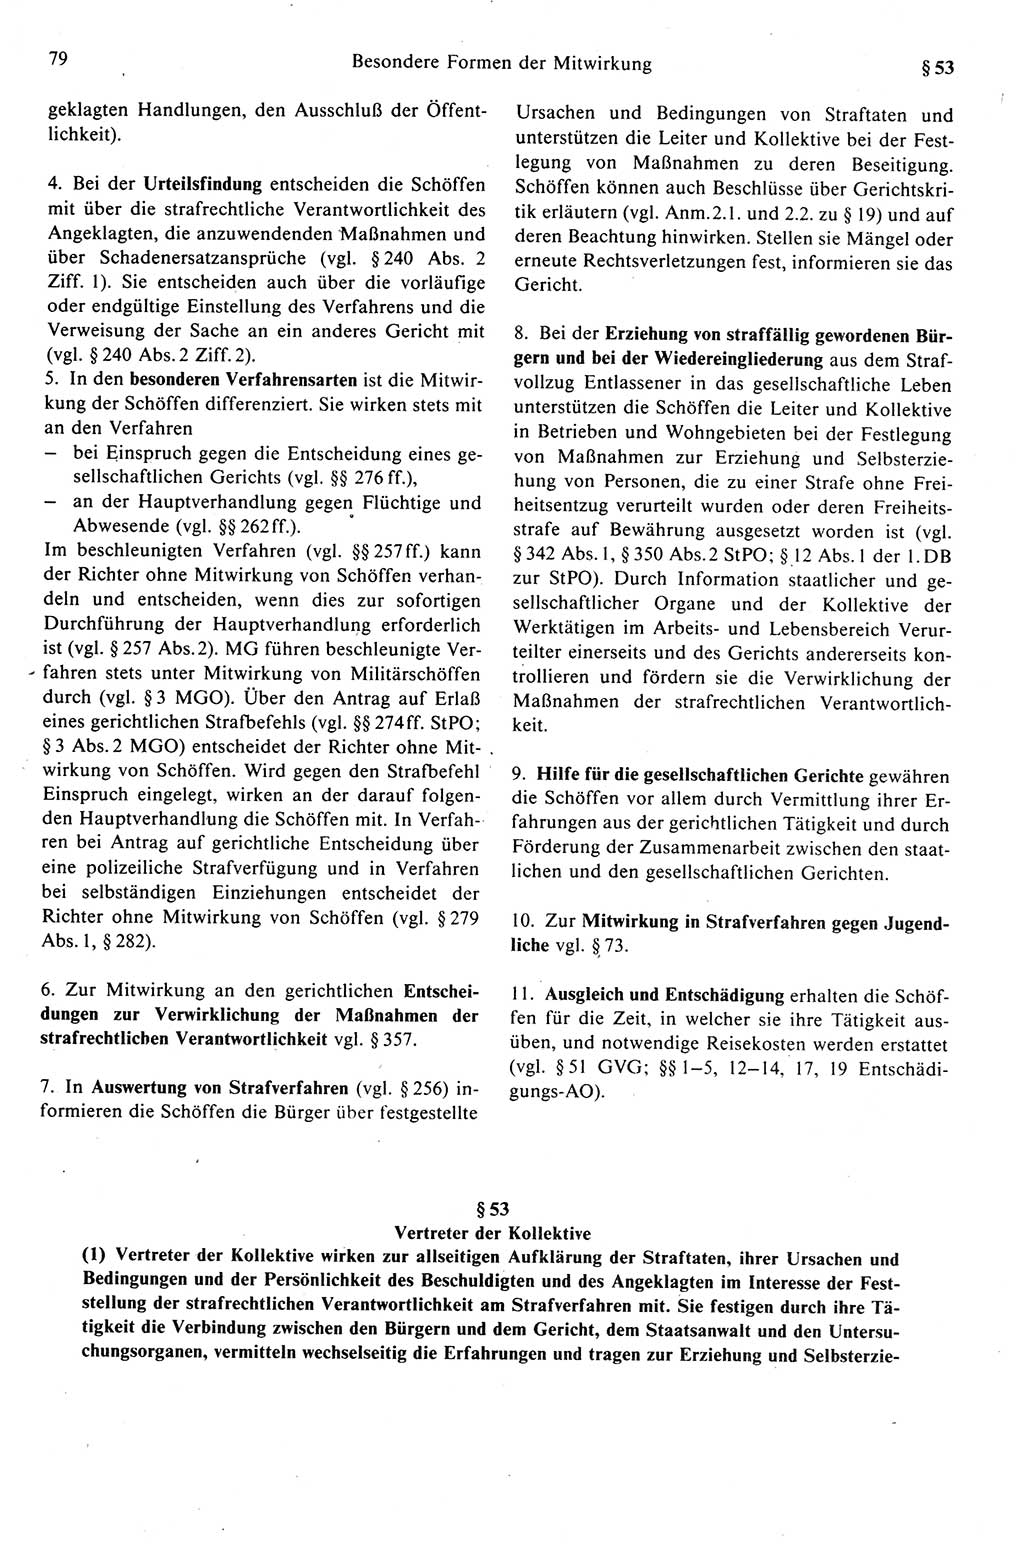 Strafprozeßrecht der DDR (Deutsche Demokratische Republik), Kommentar zur Strafprozeßordnung (StPO) 1989, Seite 79 (Strafprozeßr. DDR Komm. StPO 1989, S. 79)